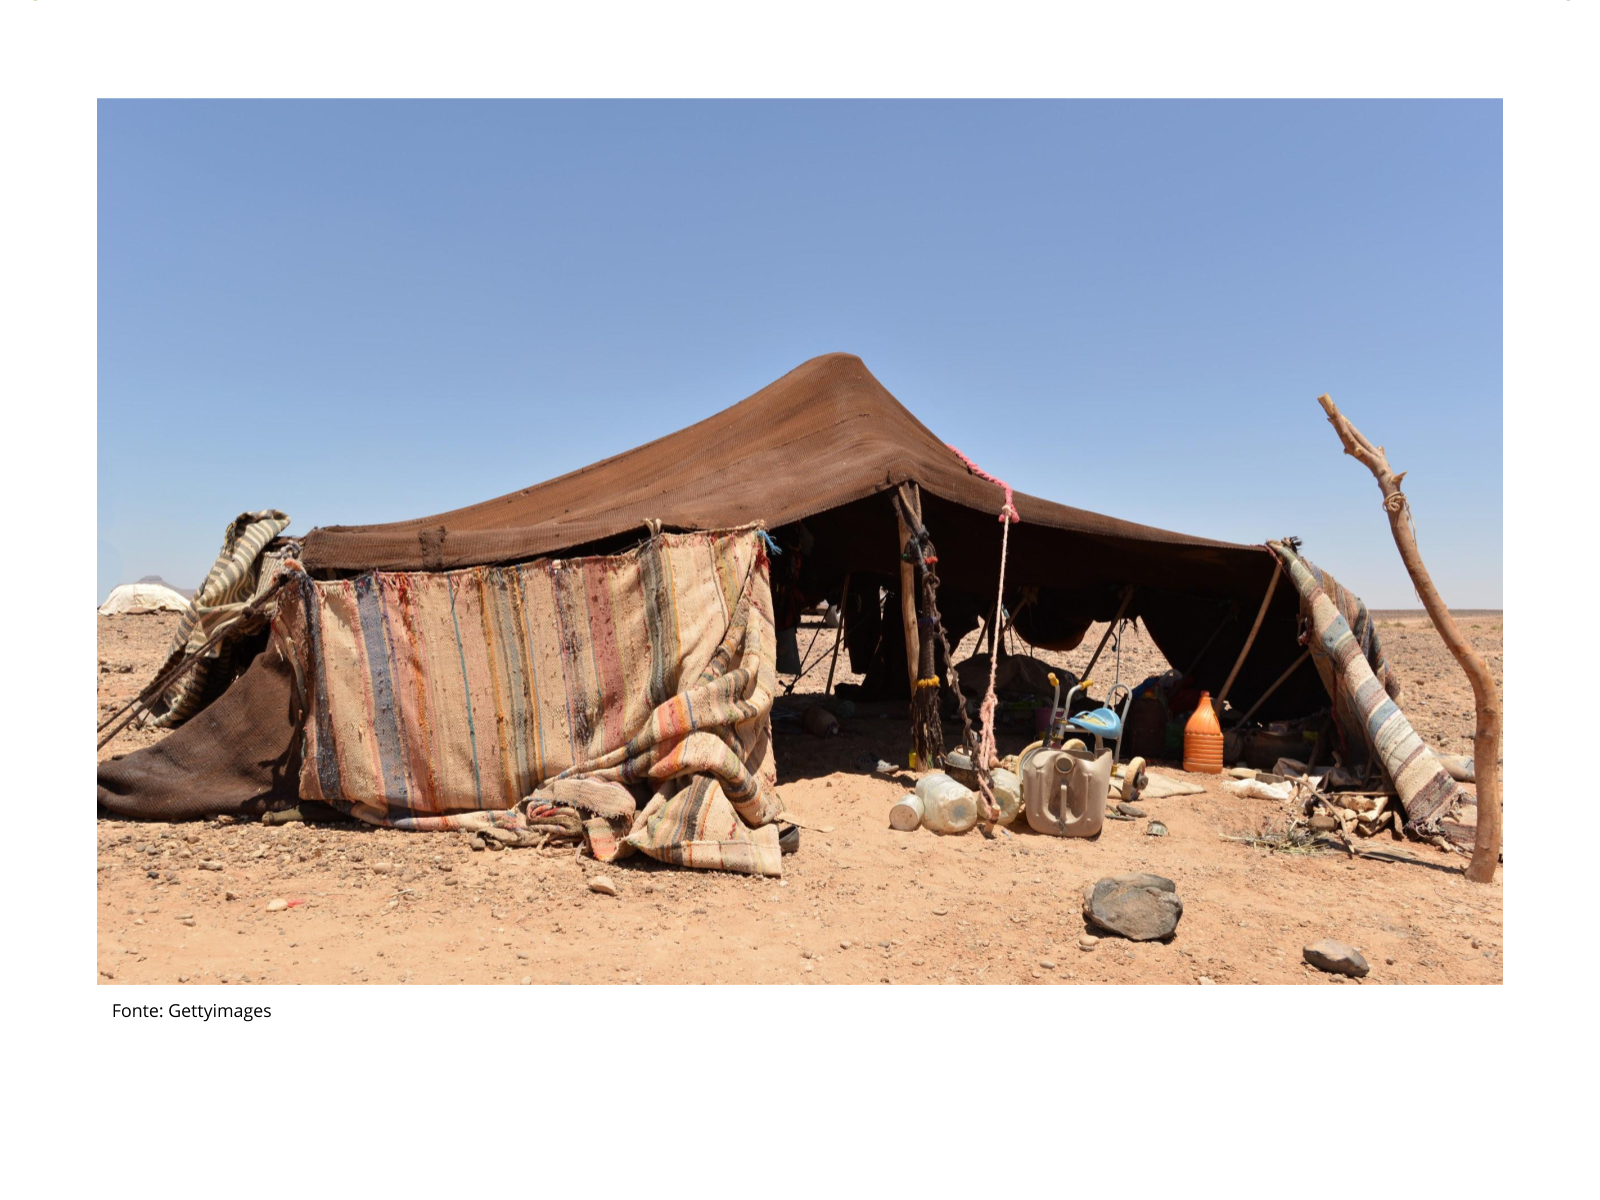 Жизнь и быт в пустыне. Шатер бедуинов фелидж. Фелидж туарегов. Палатка бедуинов в пустыне сахара Марокко. Лагерь бедуинов в Марокко.